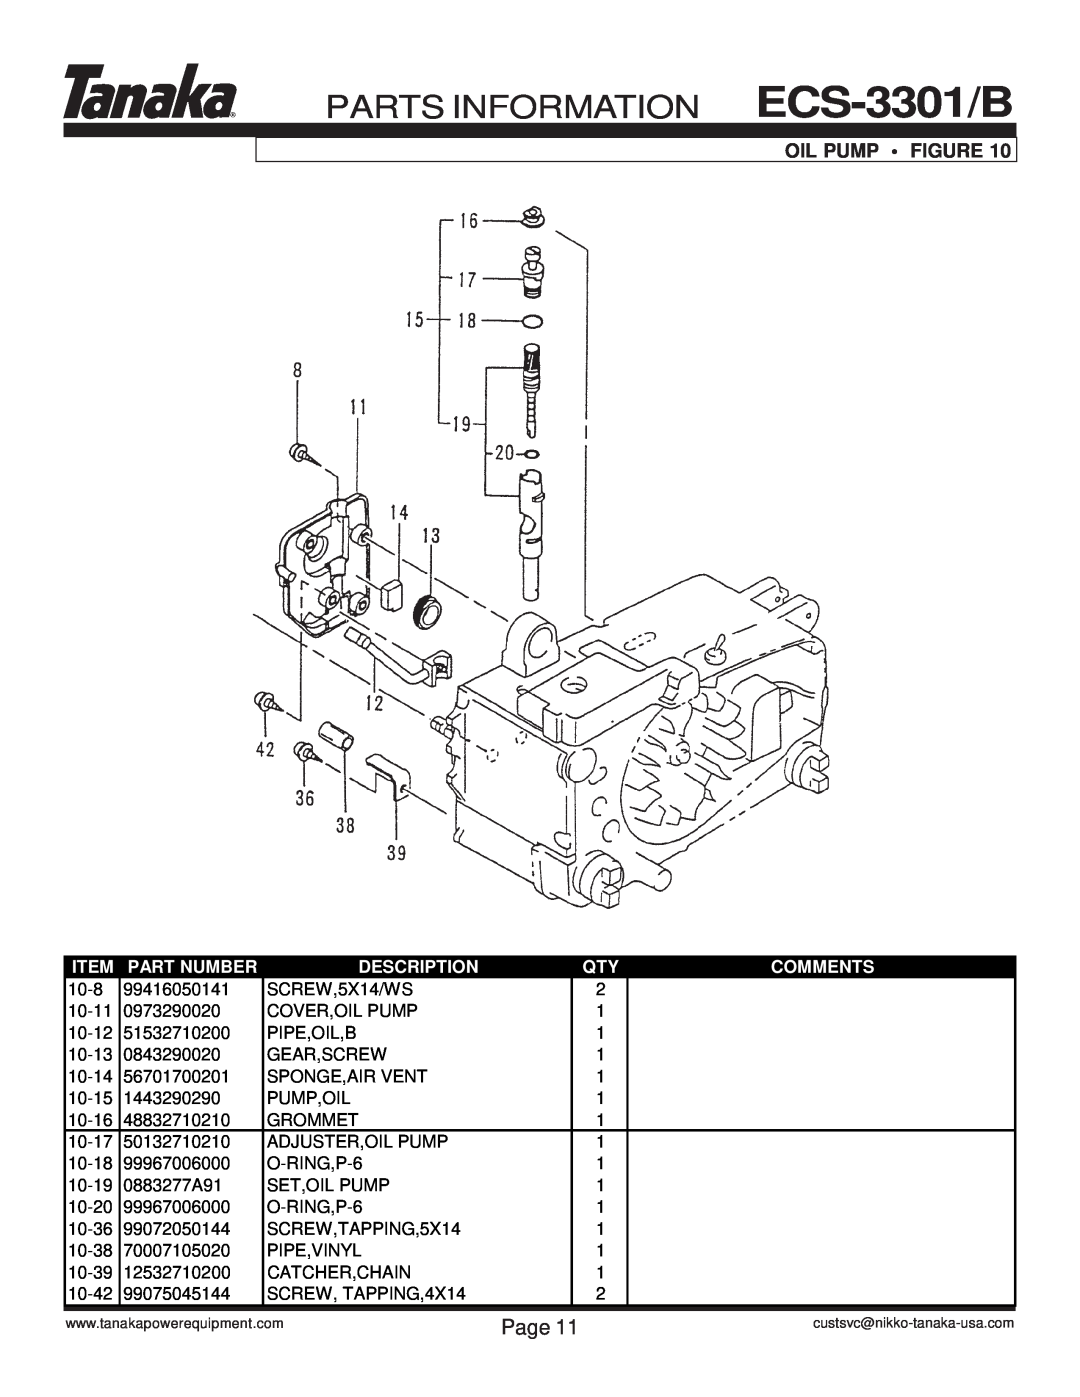 Tanaka manual Oil Pump • Figure, PARTS INFORMATION ECS-3301/B, Page, Part Number, Description, Comments 